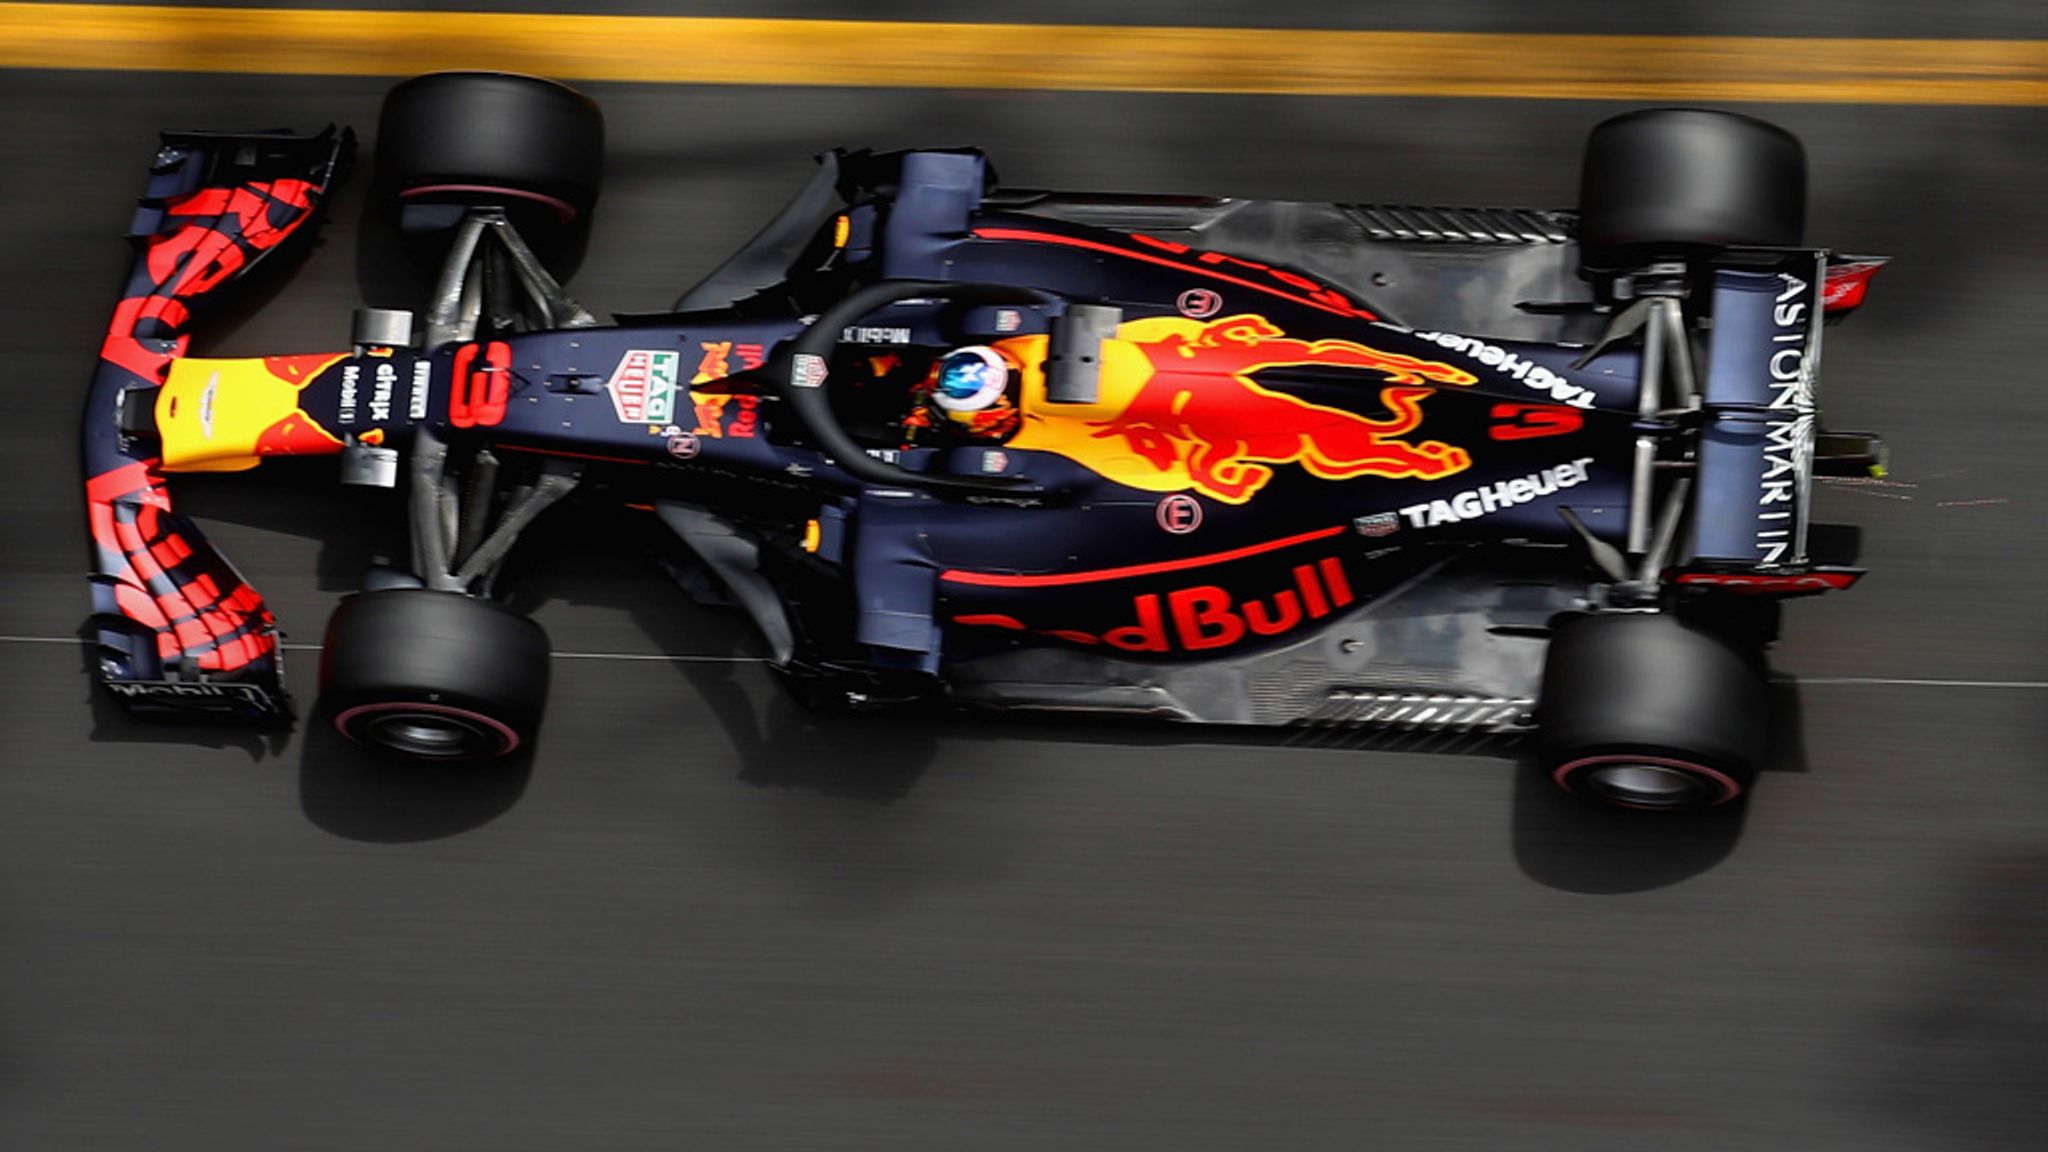 lægemidlet plads Valg F1 in 2019: Optimism mounting for Red Bull-Honda | F1 News